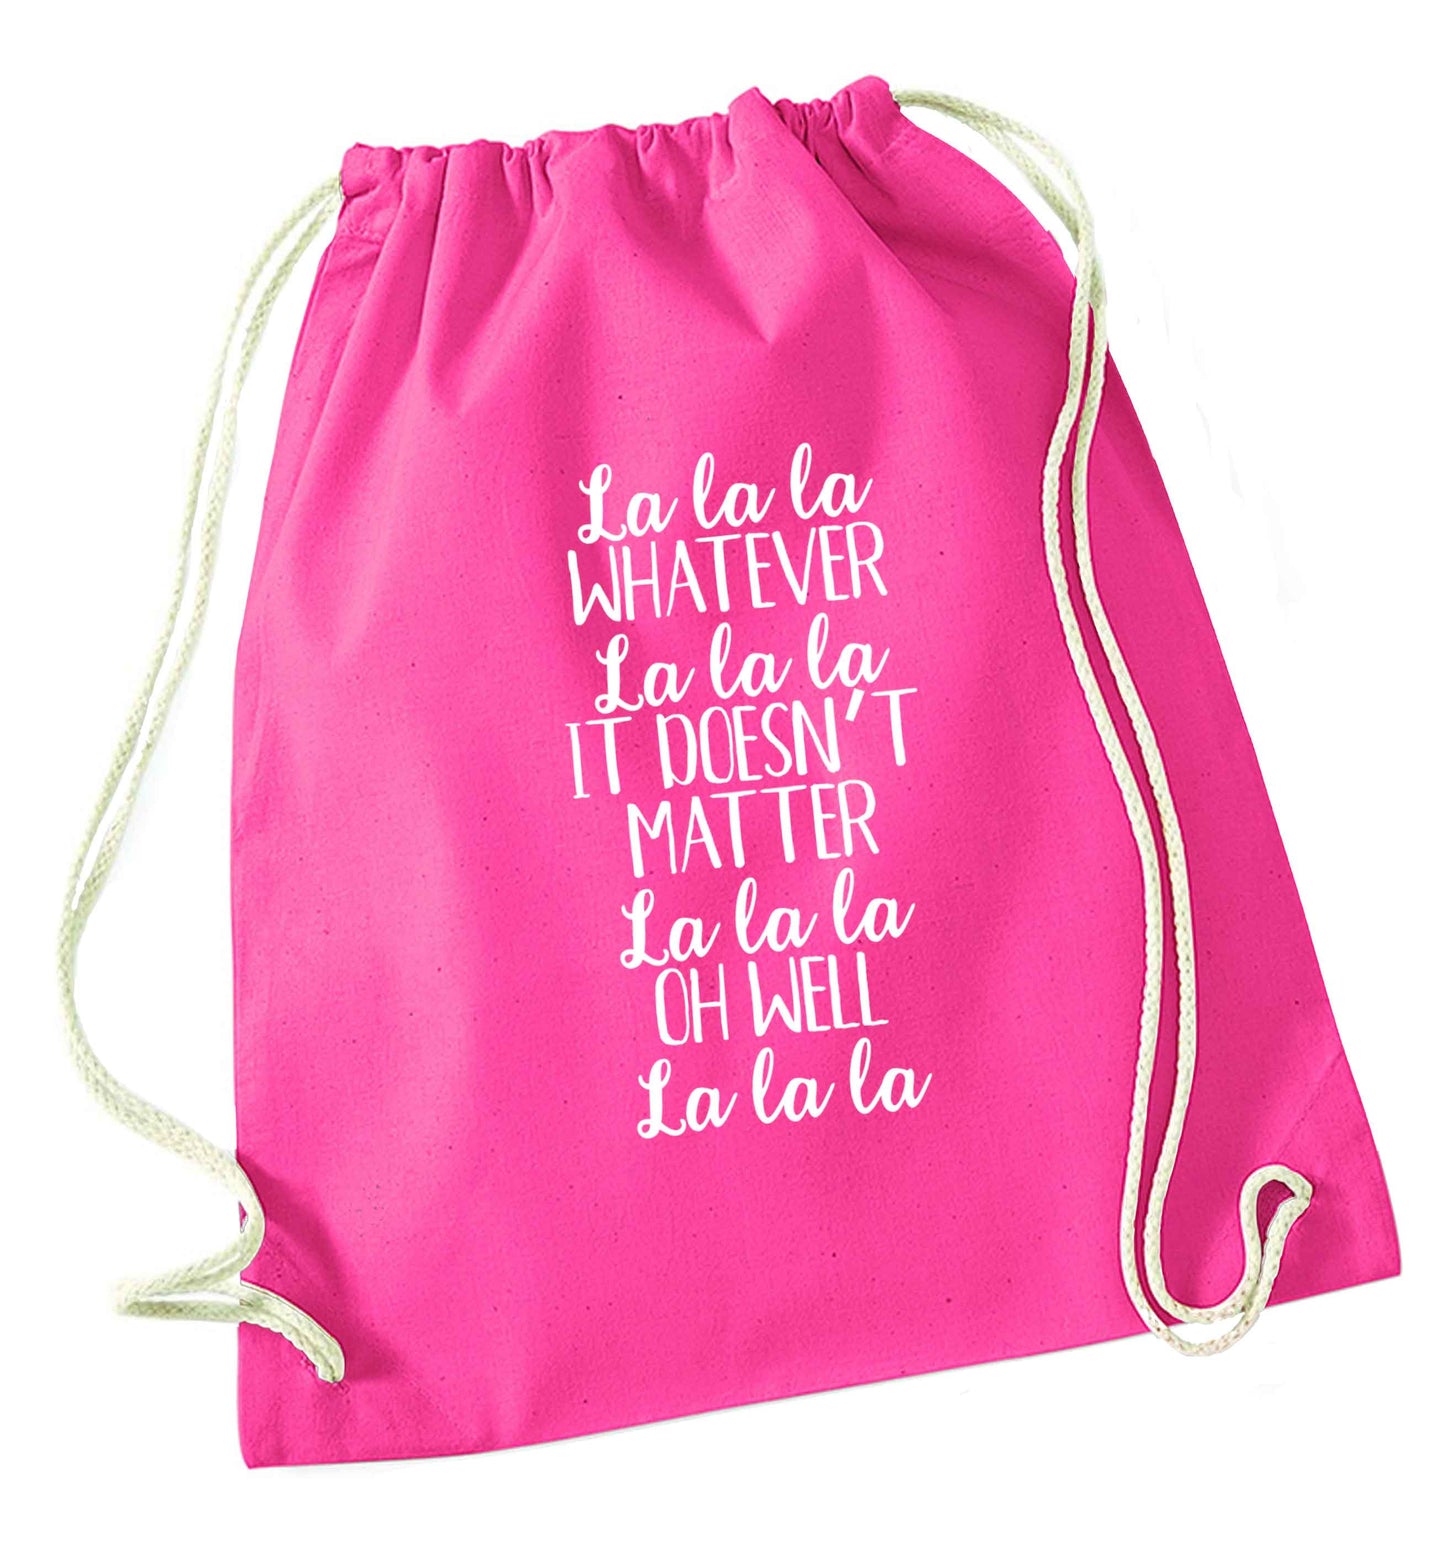 Viral song lyrics - check! Gen z babies where you at? pink drawstring bag